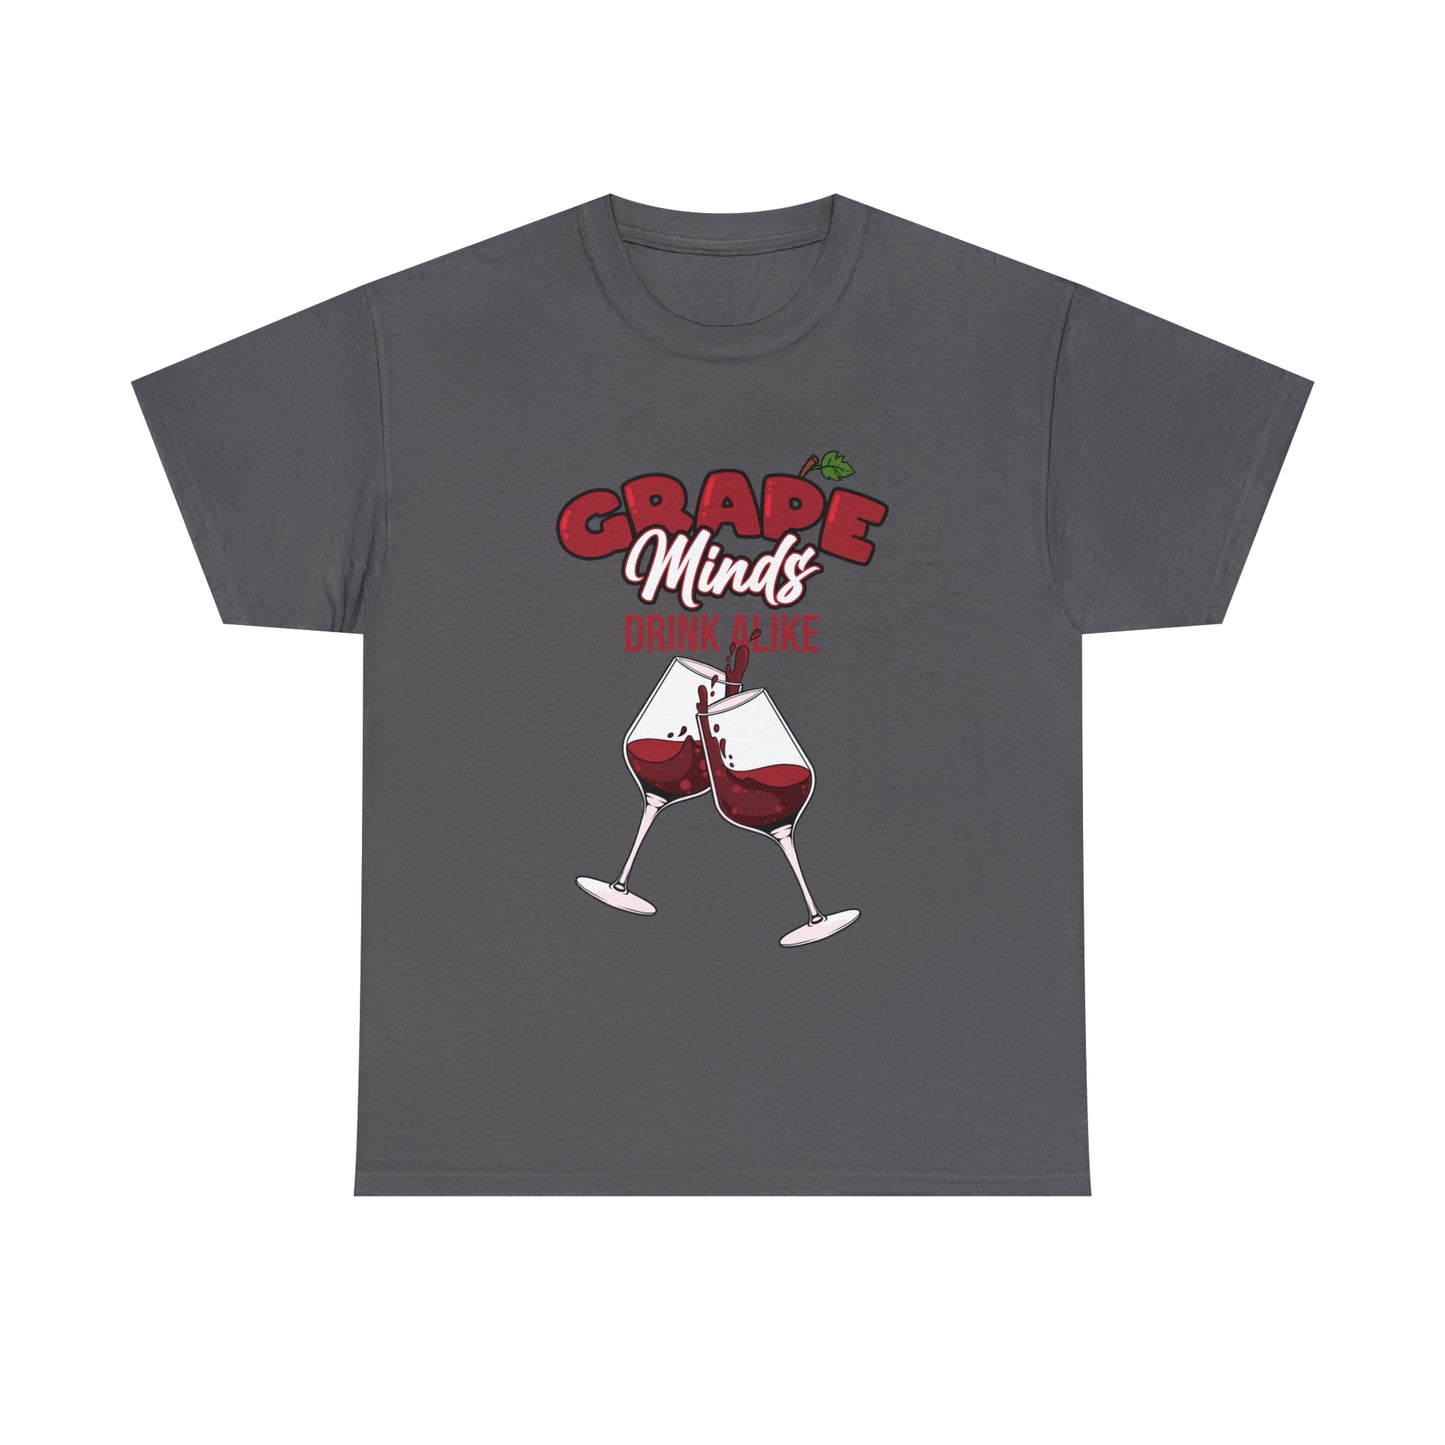 Custom Parody T-shirt, Grape minds think alike shirt design